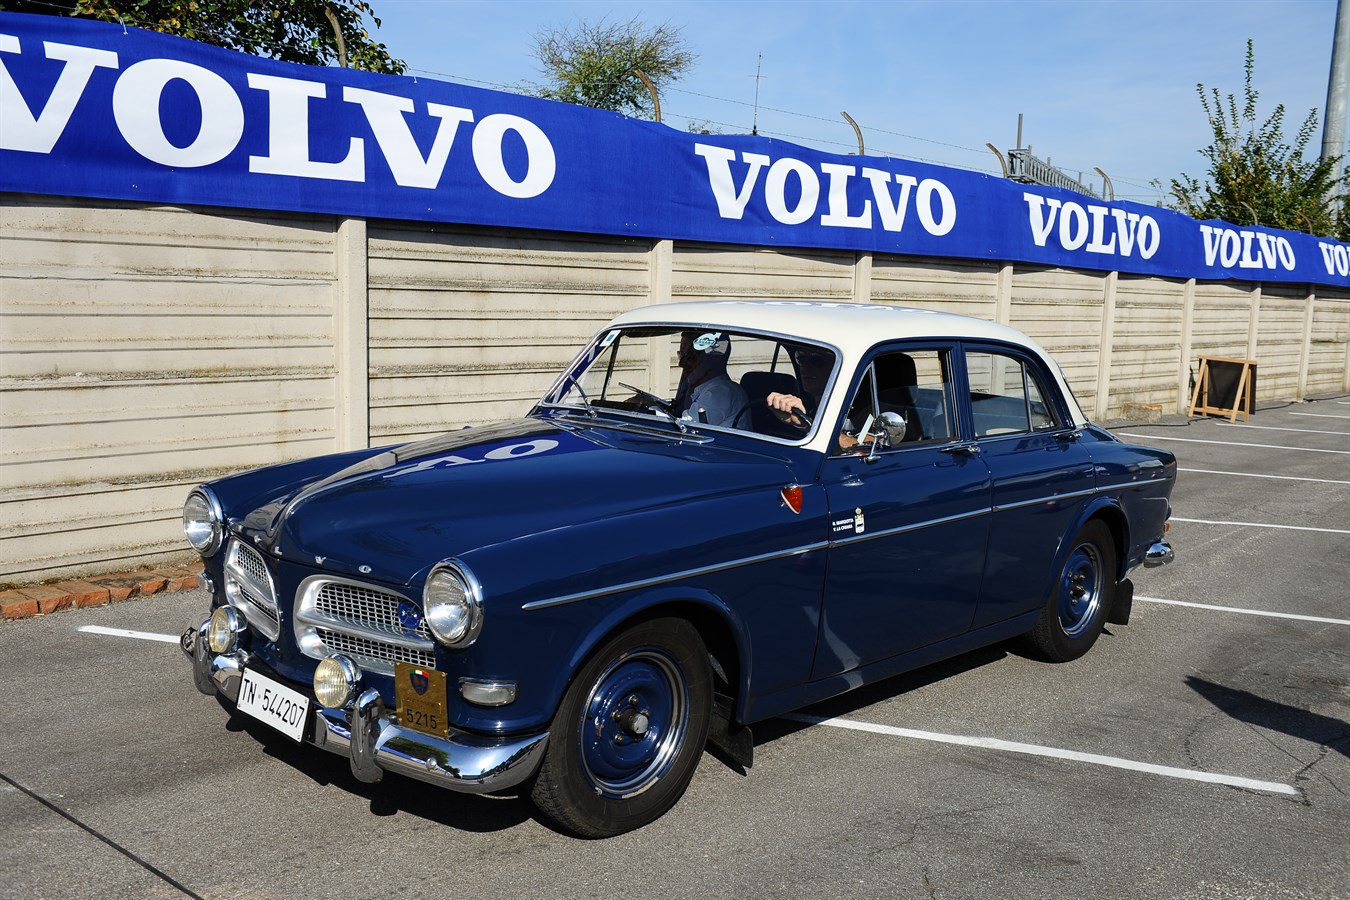 Registro Volvo d'Epoca - Raduno Annuale 2016 